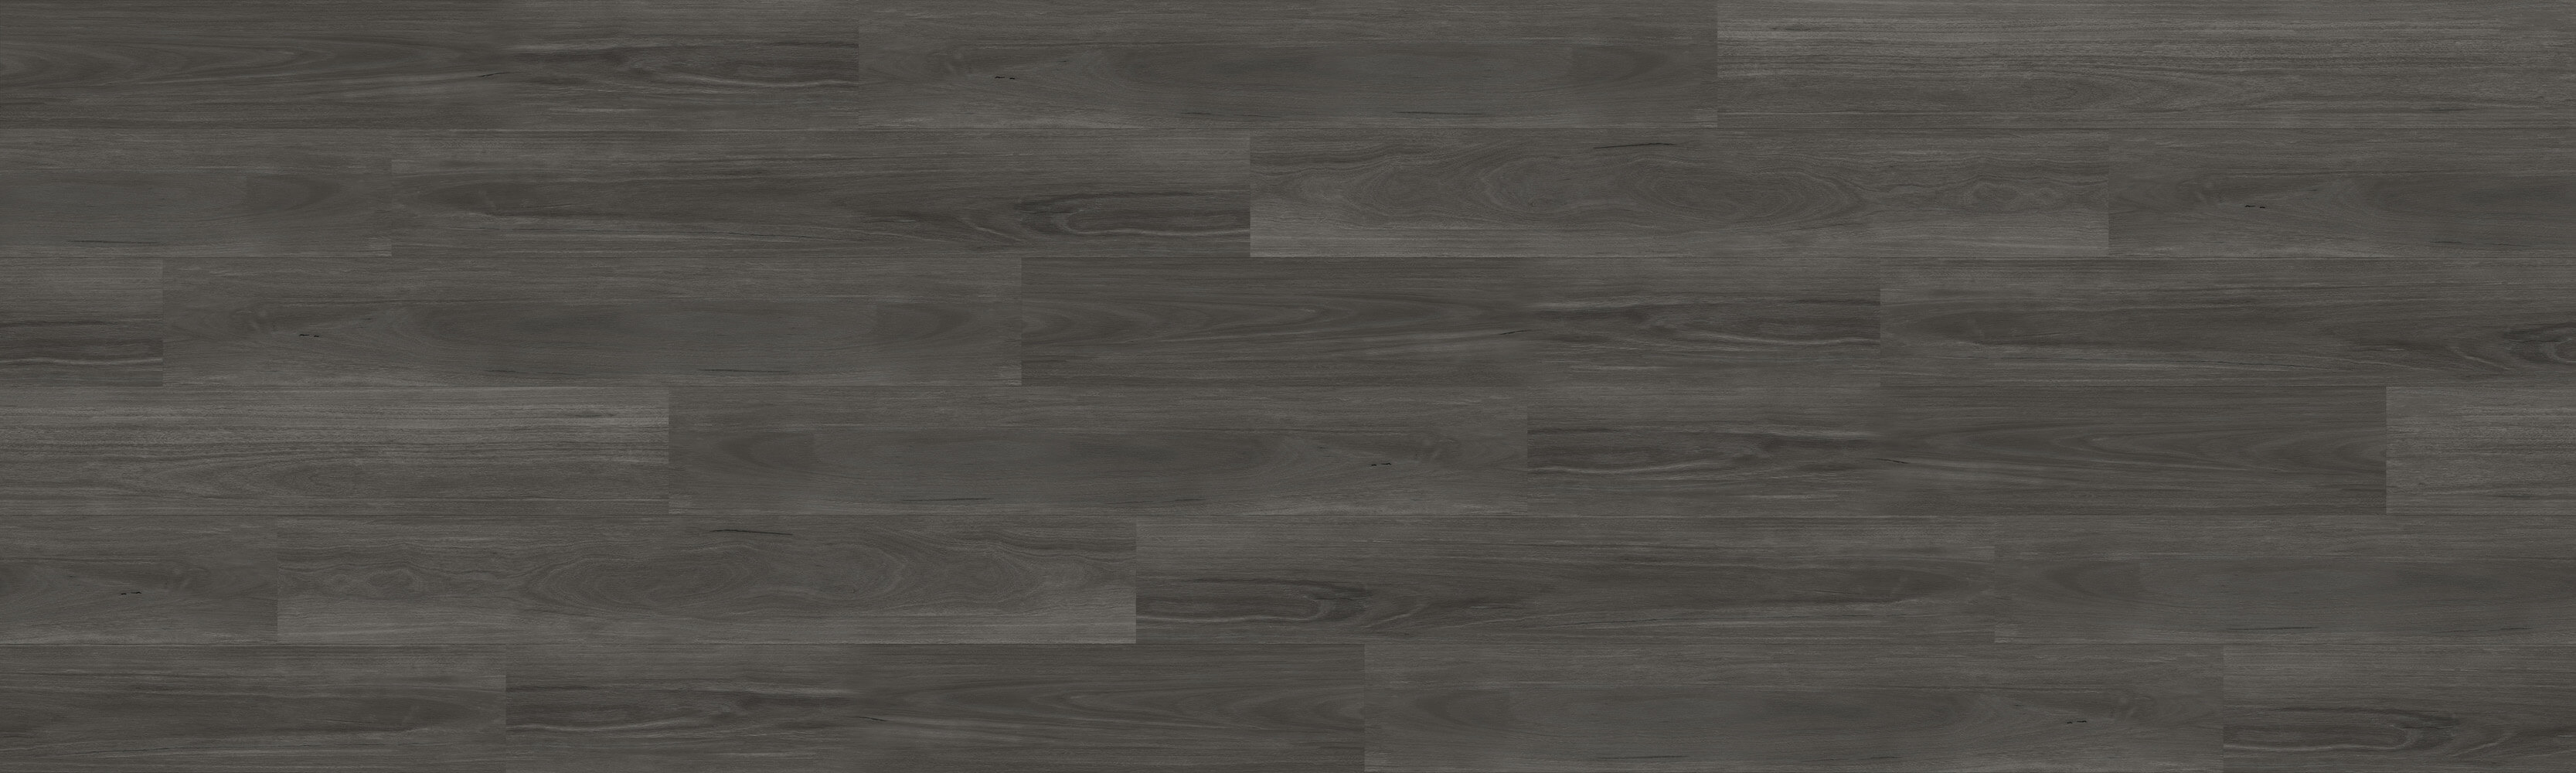 NFD Siena XL Hybrid Flooring Black Wenge - Online Flooring Store